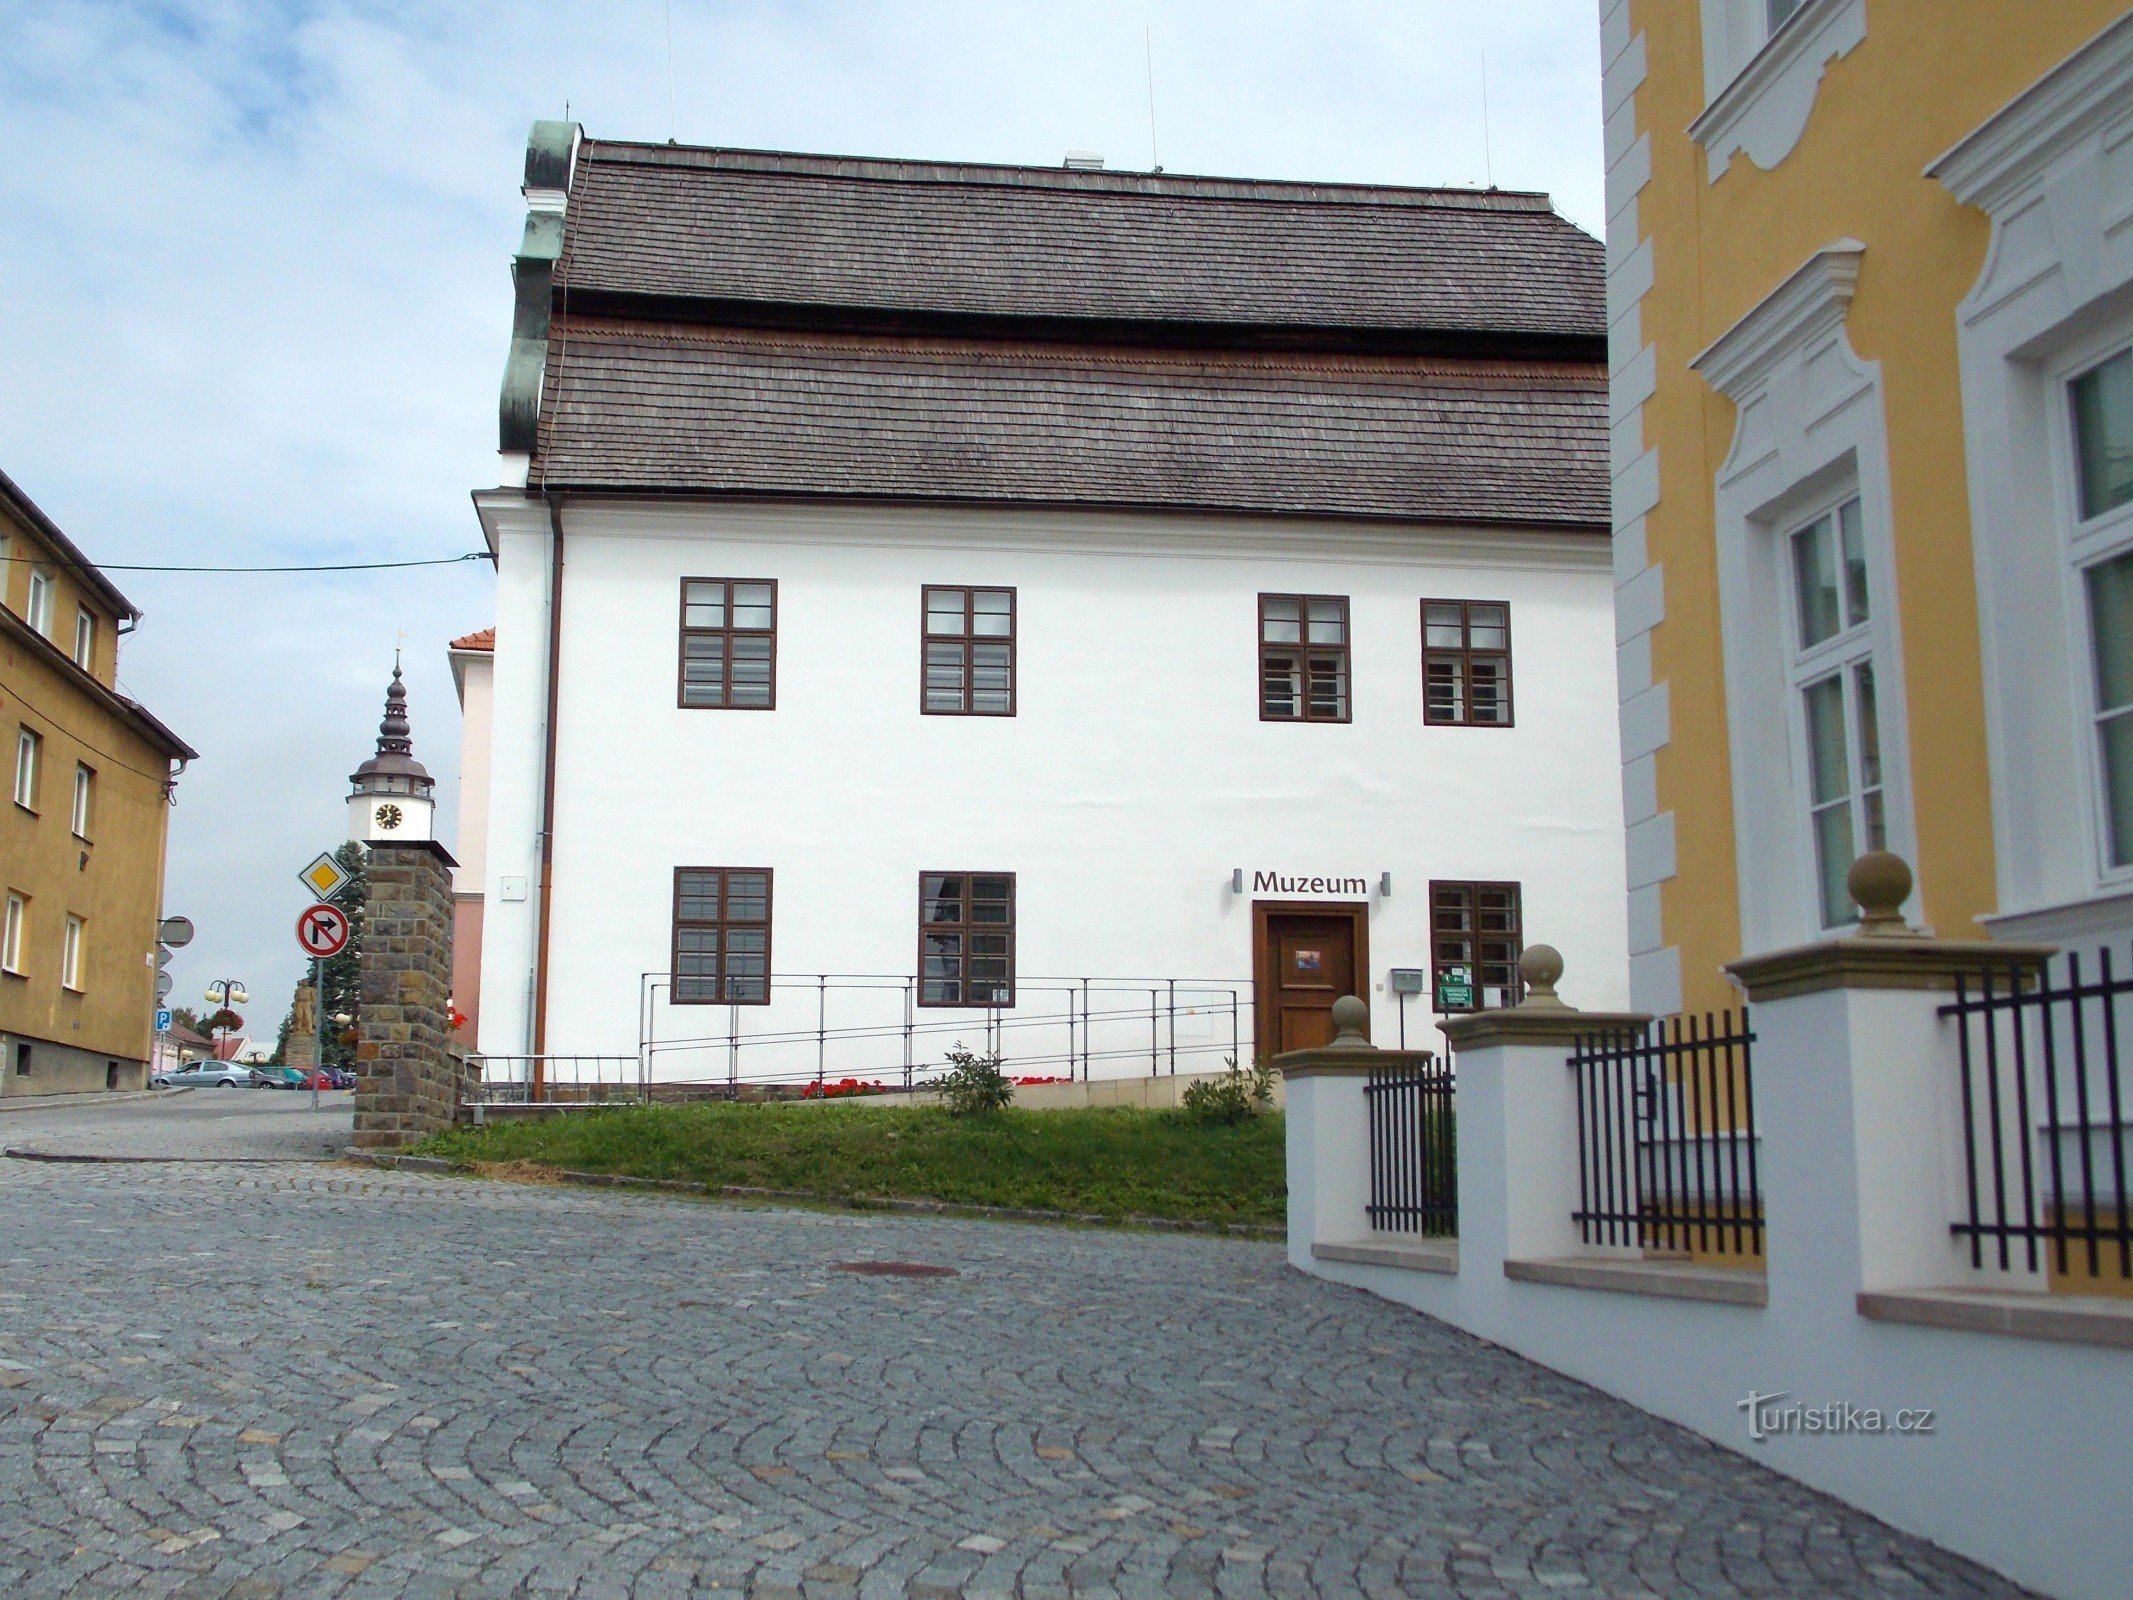 Zum Museum in Bílovec